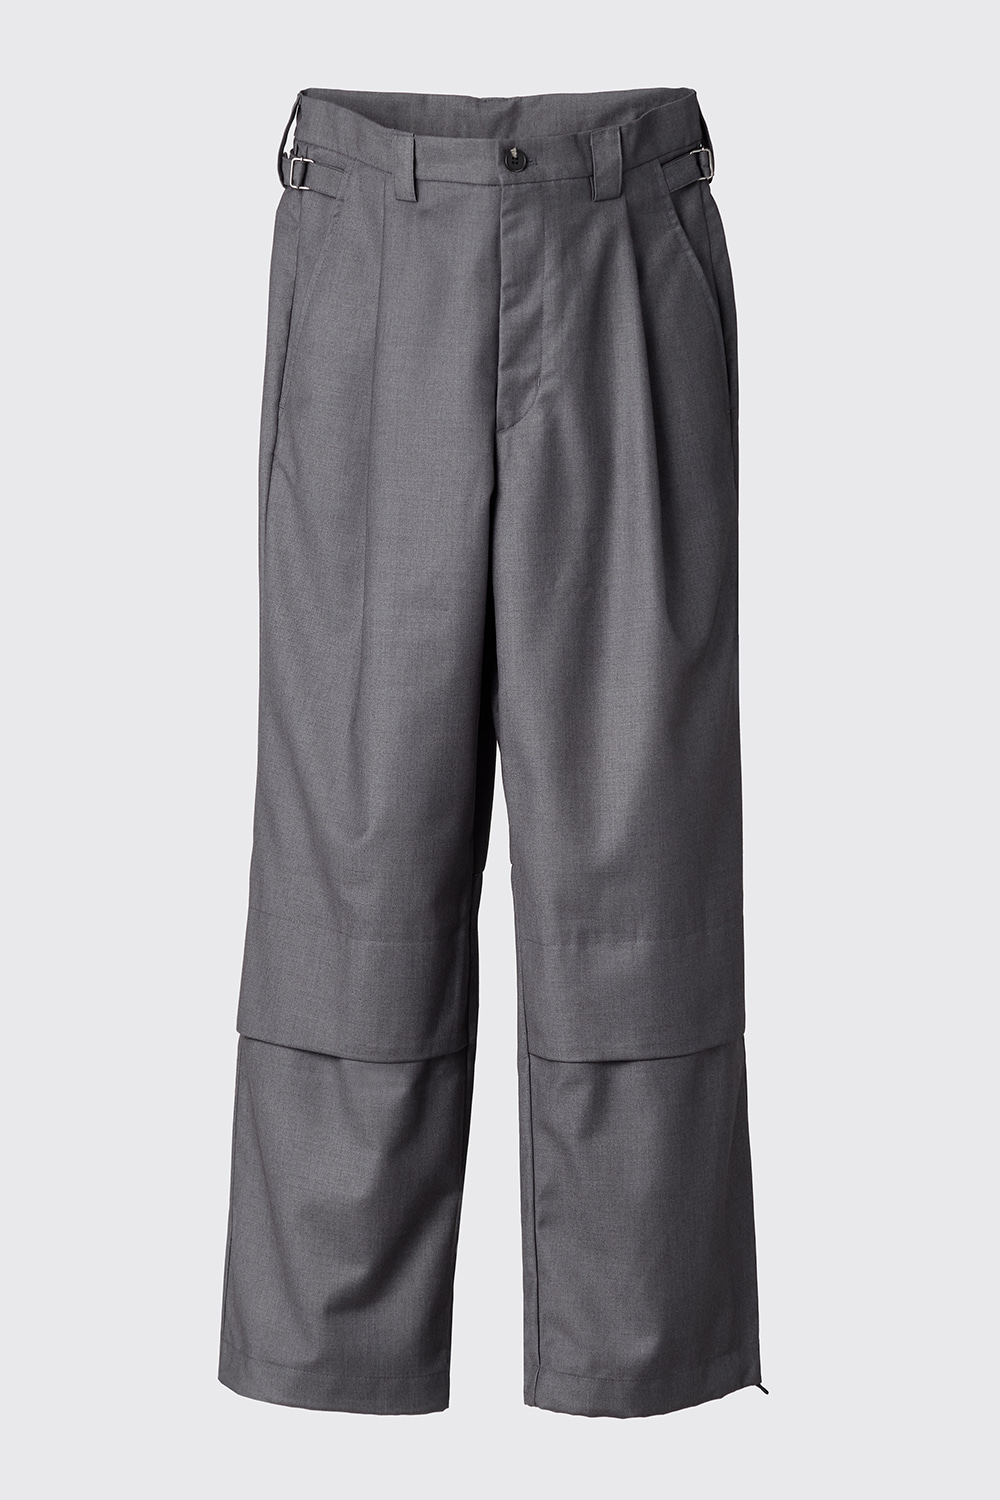 Layer Pants V2 Dark Grey (Restock)